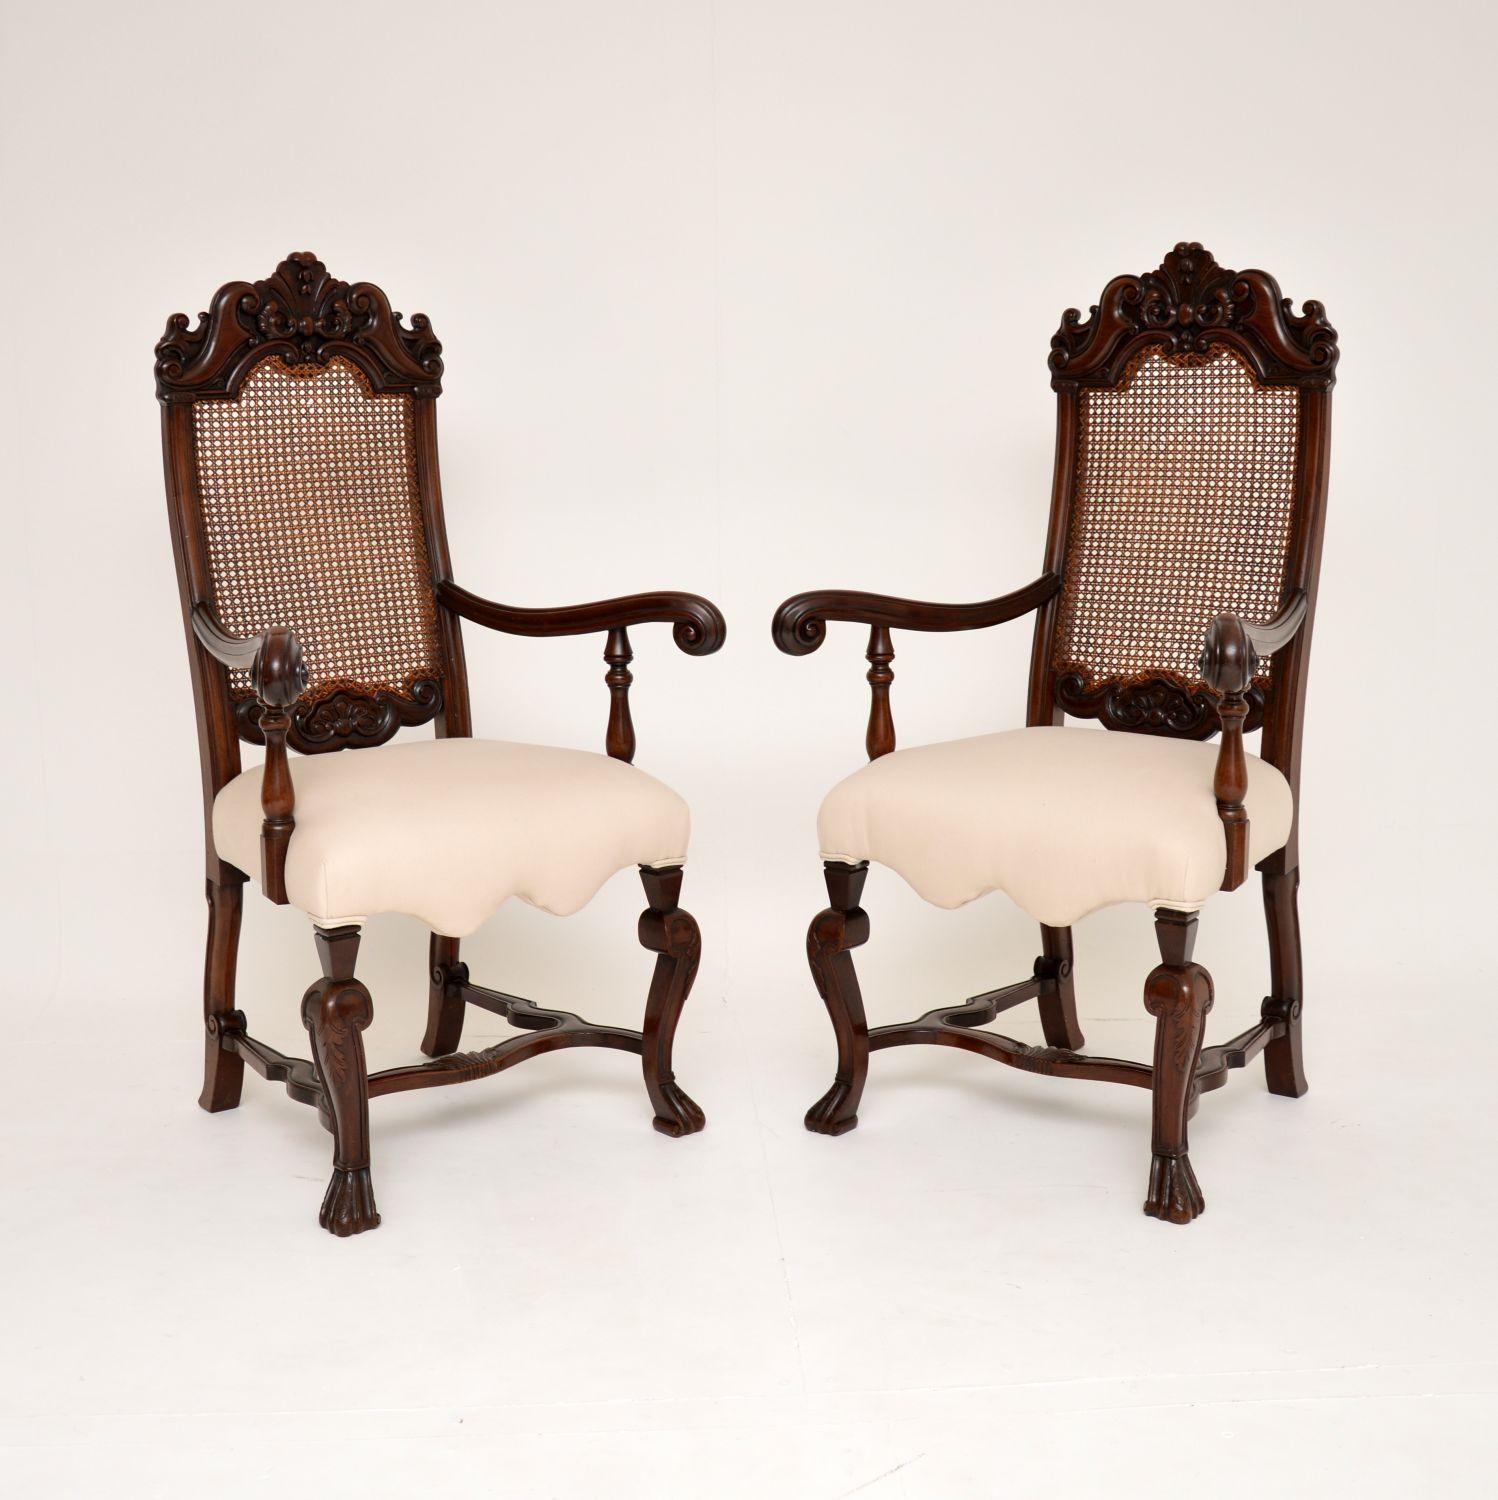 Superbe paire de fauteuils anciens en noyer sculpté de style Carolean avec dossier en rotin. Fabriqués en Angleterre, ils datent d'environ 1880-1900.

La qualité est tout à fait étonnante, avec des sculptures de grande qualité. Ils ont de hauts